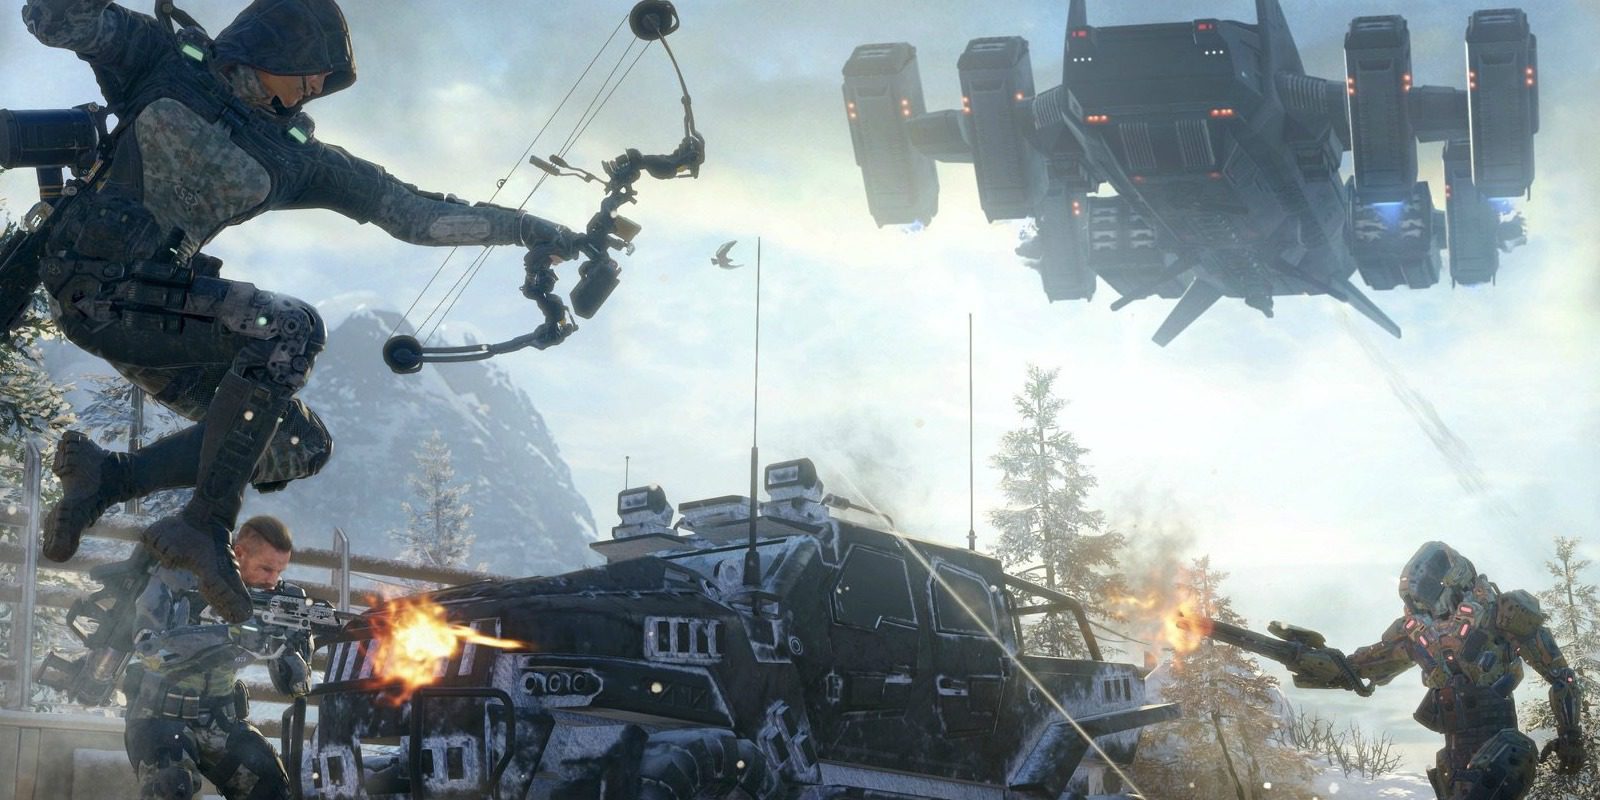 Llegan dos nuevas armas al Mercado Negro de 'Call of Duty: Black Ops III'